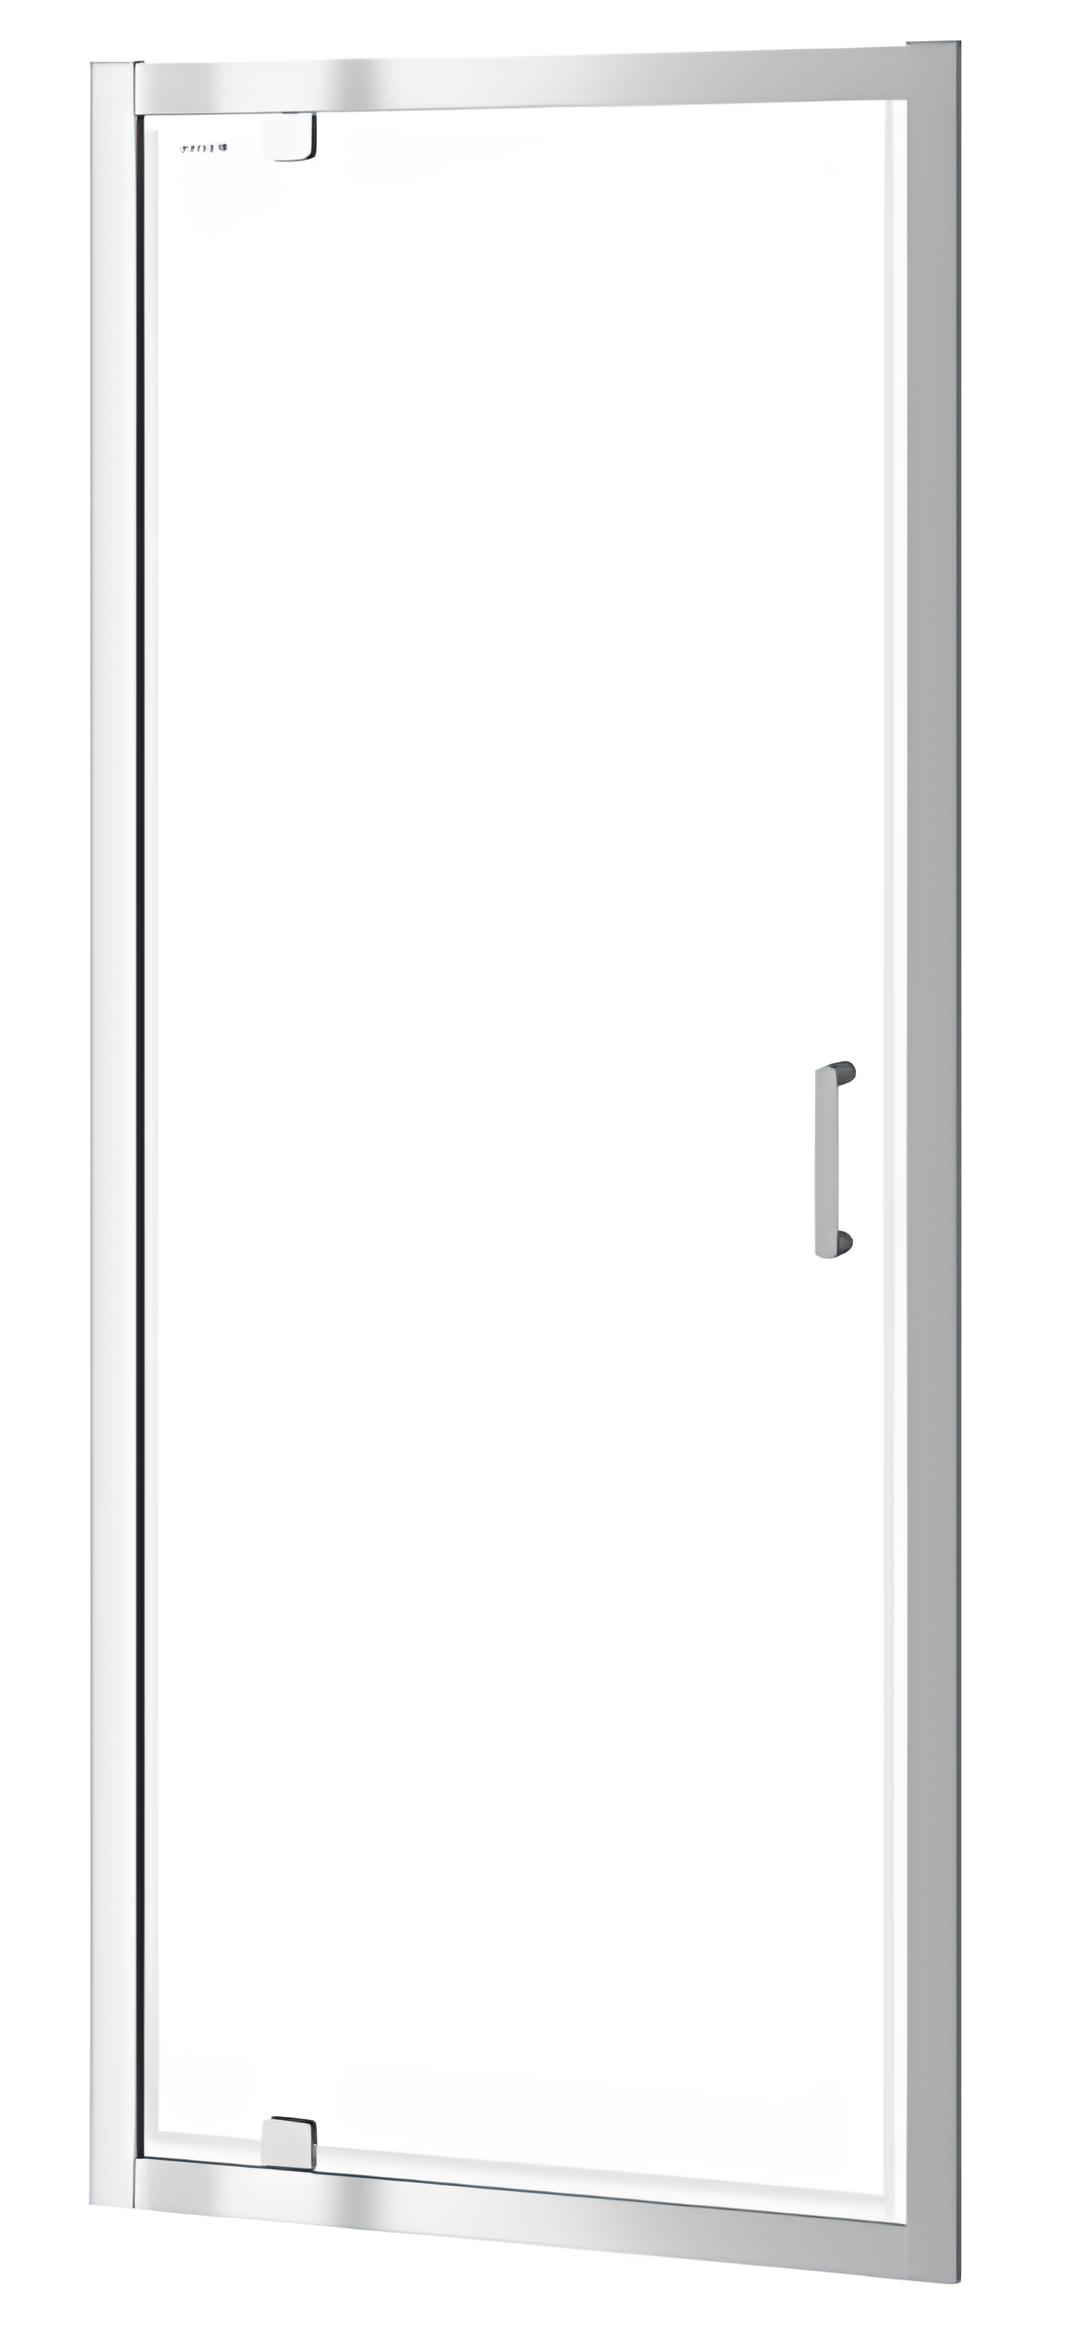 Двері душової кабіни Cersanit ZIP PIVOT 90*190 (S154-006)